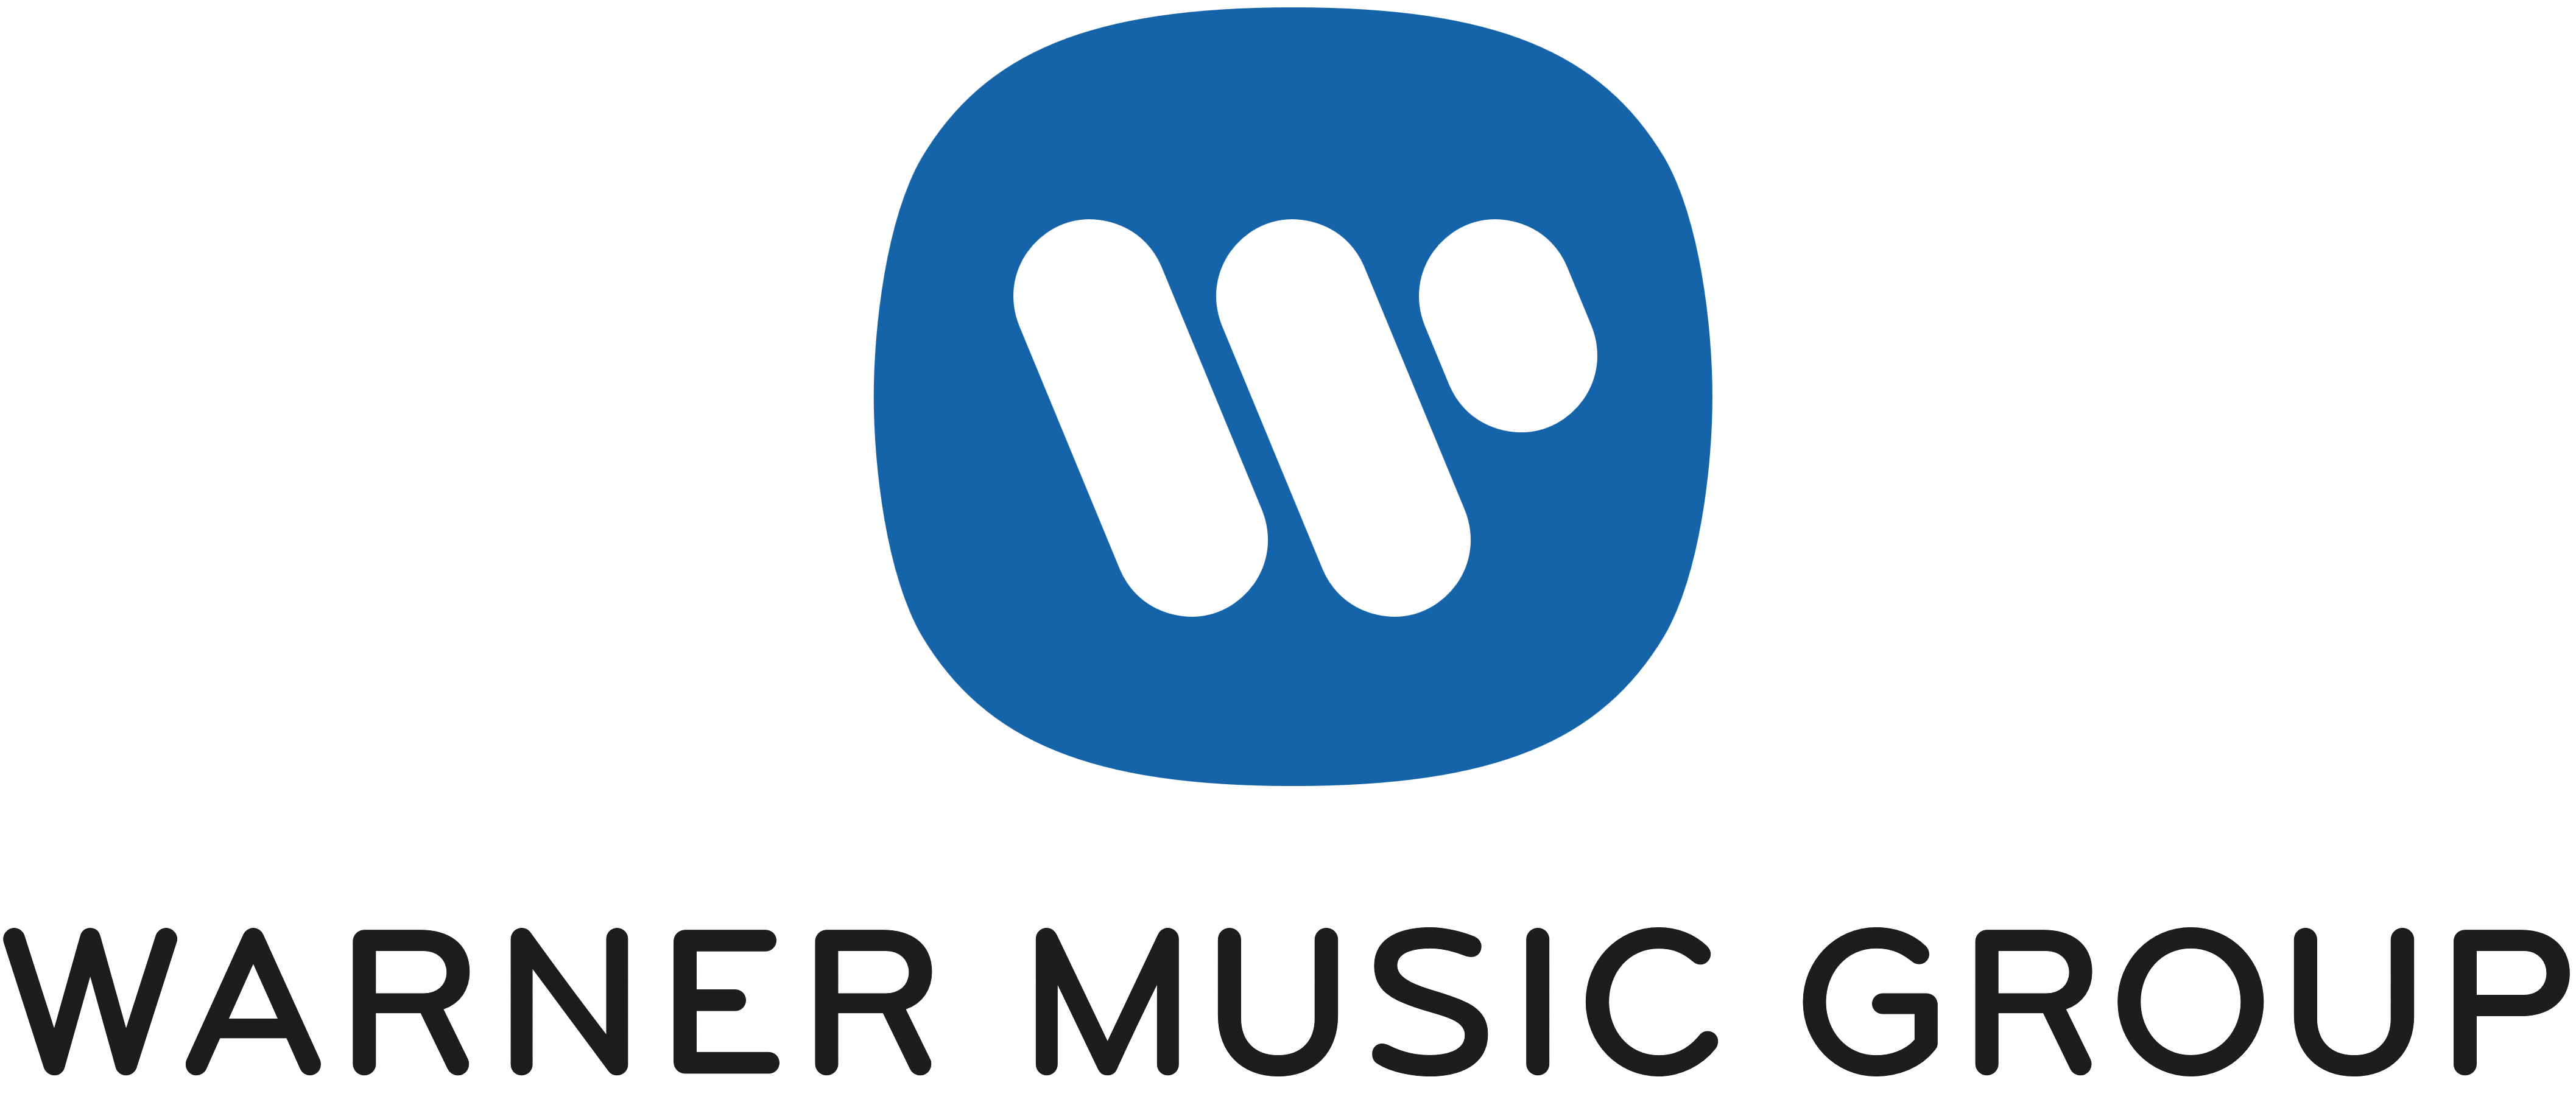 Warner Music Group (WMG) logo, logotype